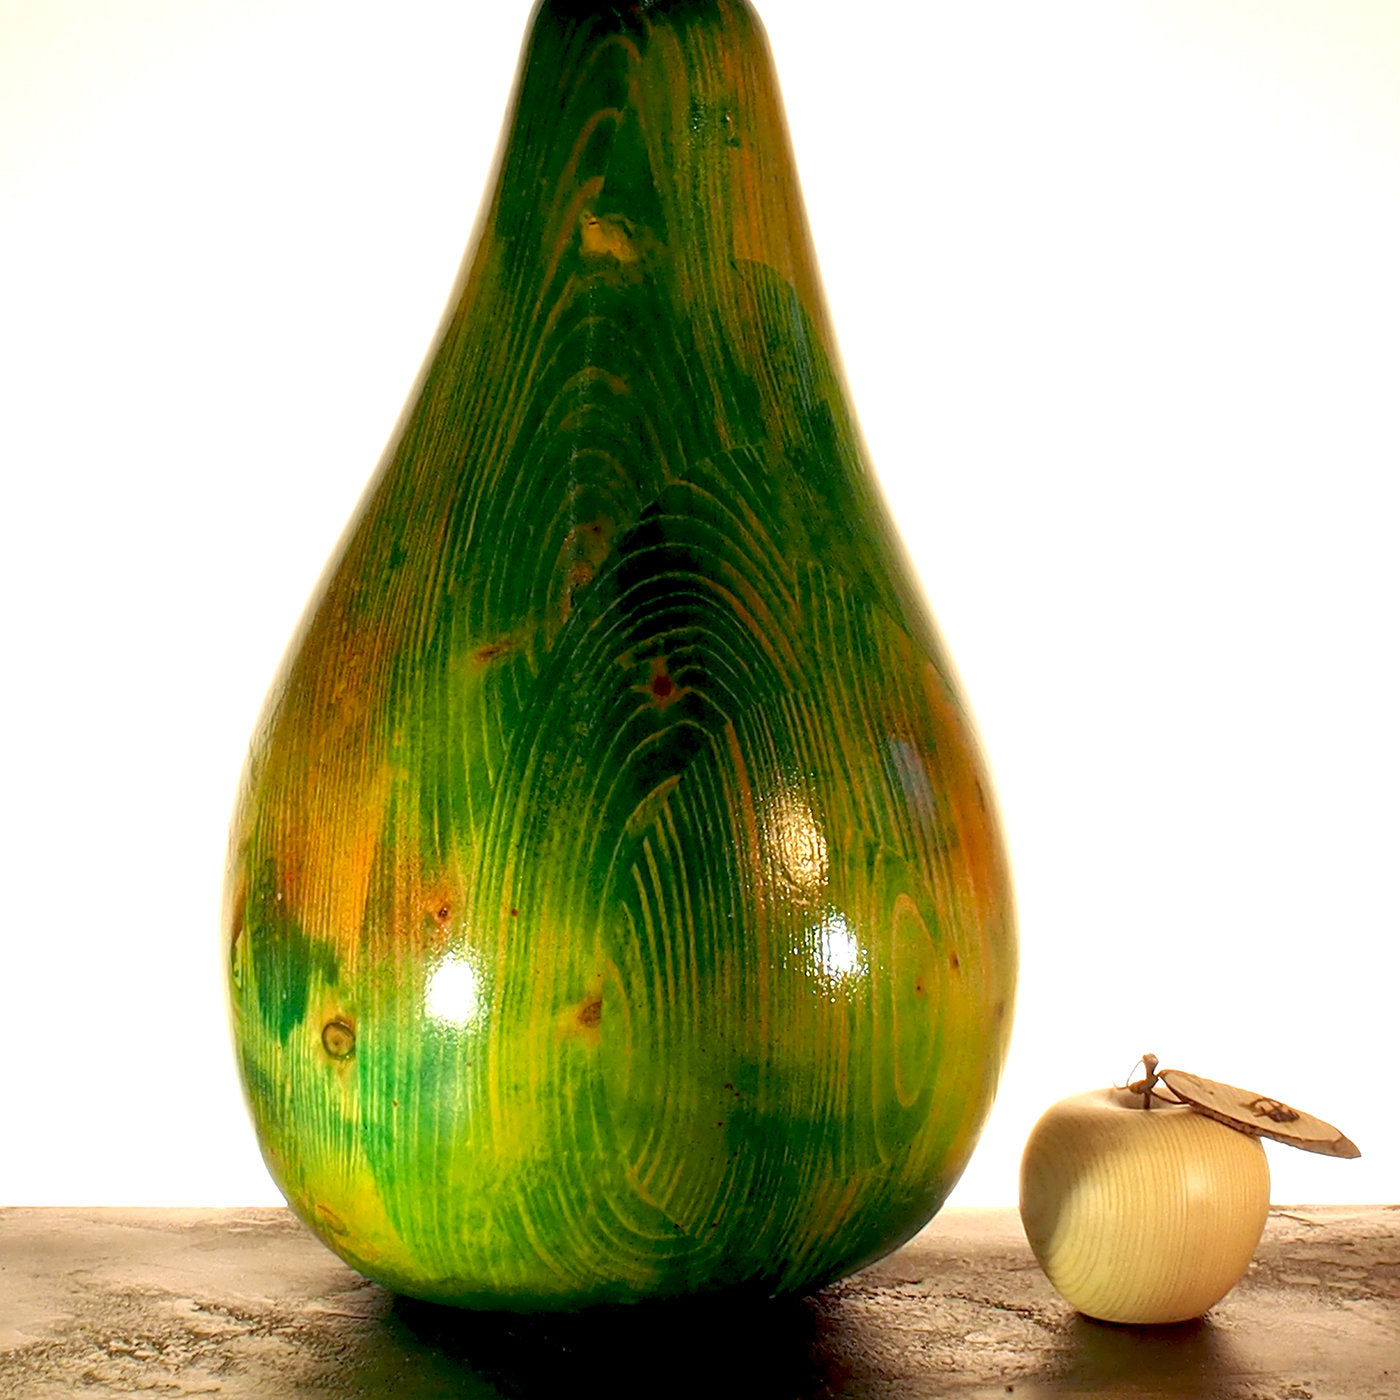 Shiny Green Pear - Alternative view 1